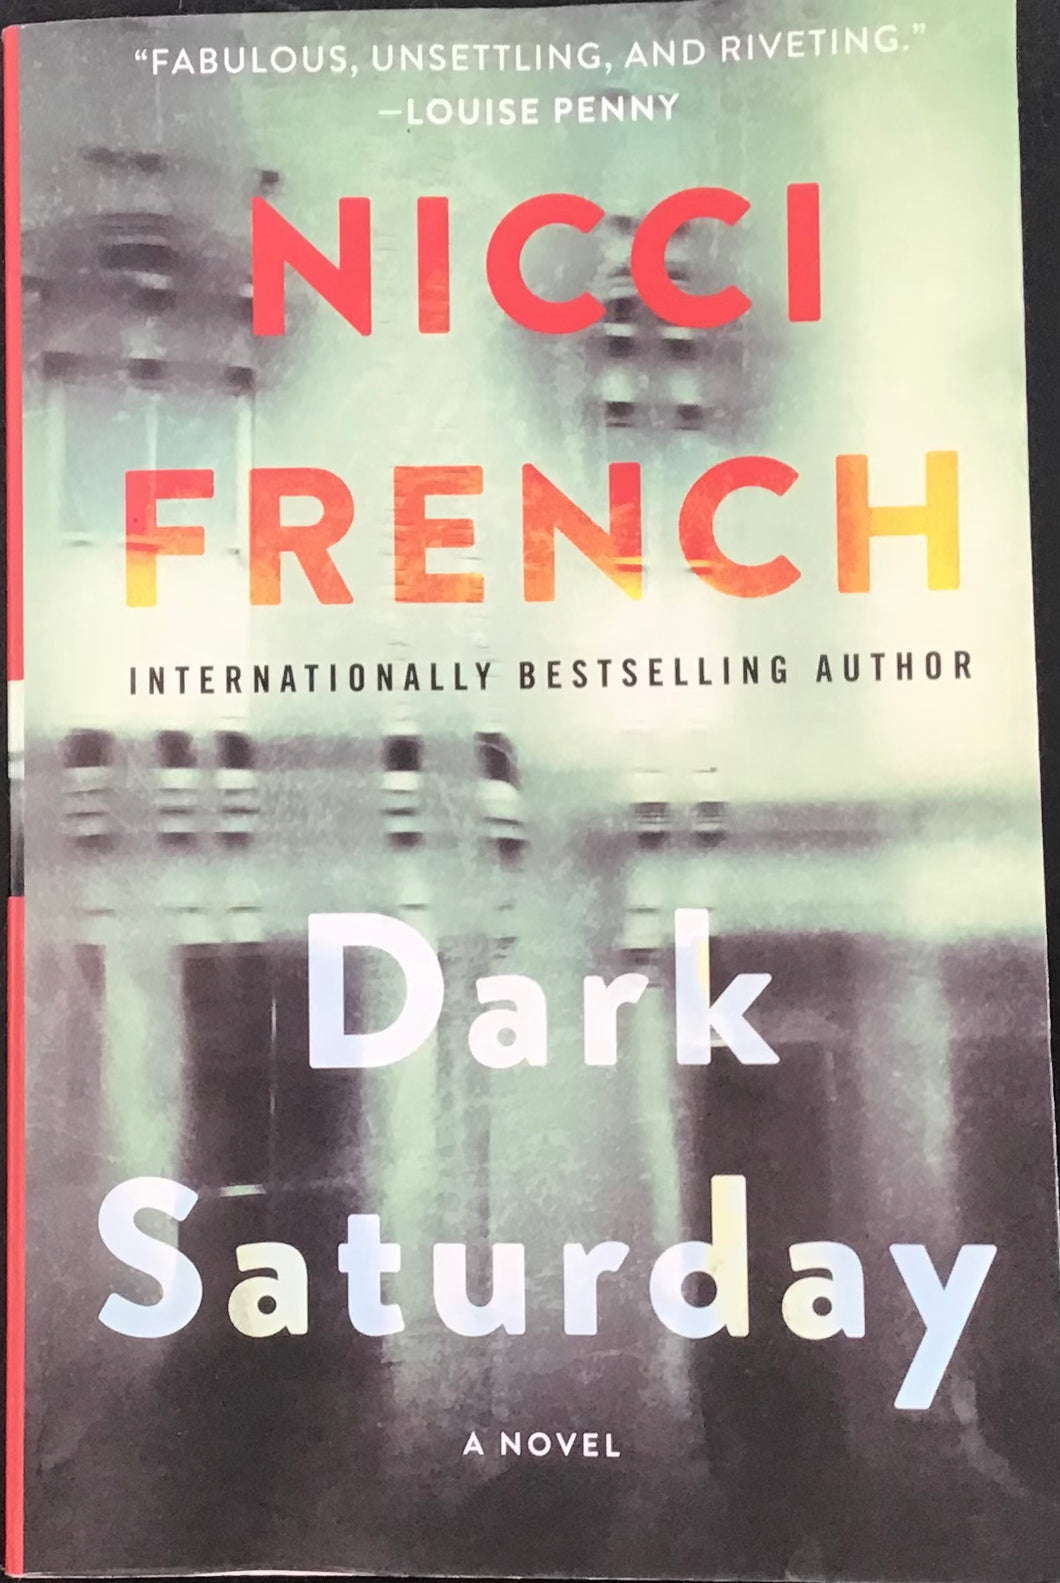 Dark Saturday, Nicci French